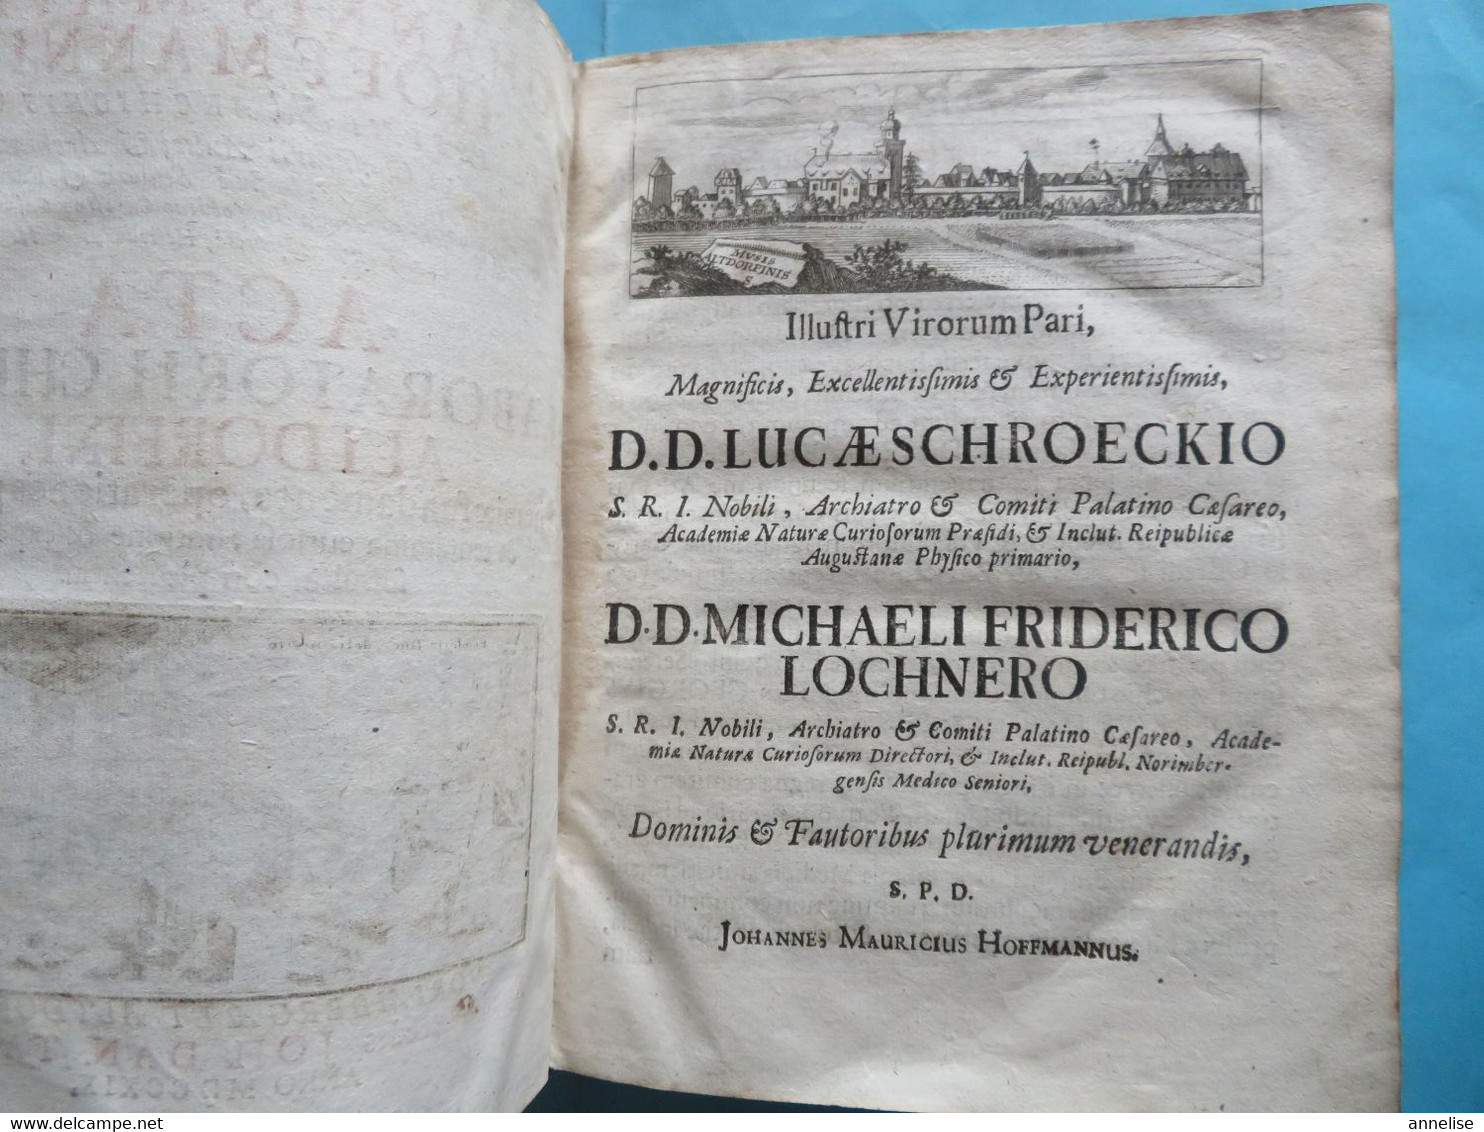 1719 Acta Loboratorii Chemici Altdorfini   J Mauricii Hoffmanni  Ed. Nuremberg  Texte En Latin - Livres Anciens